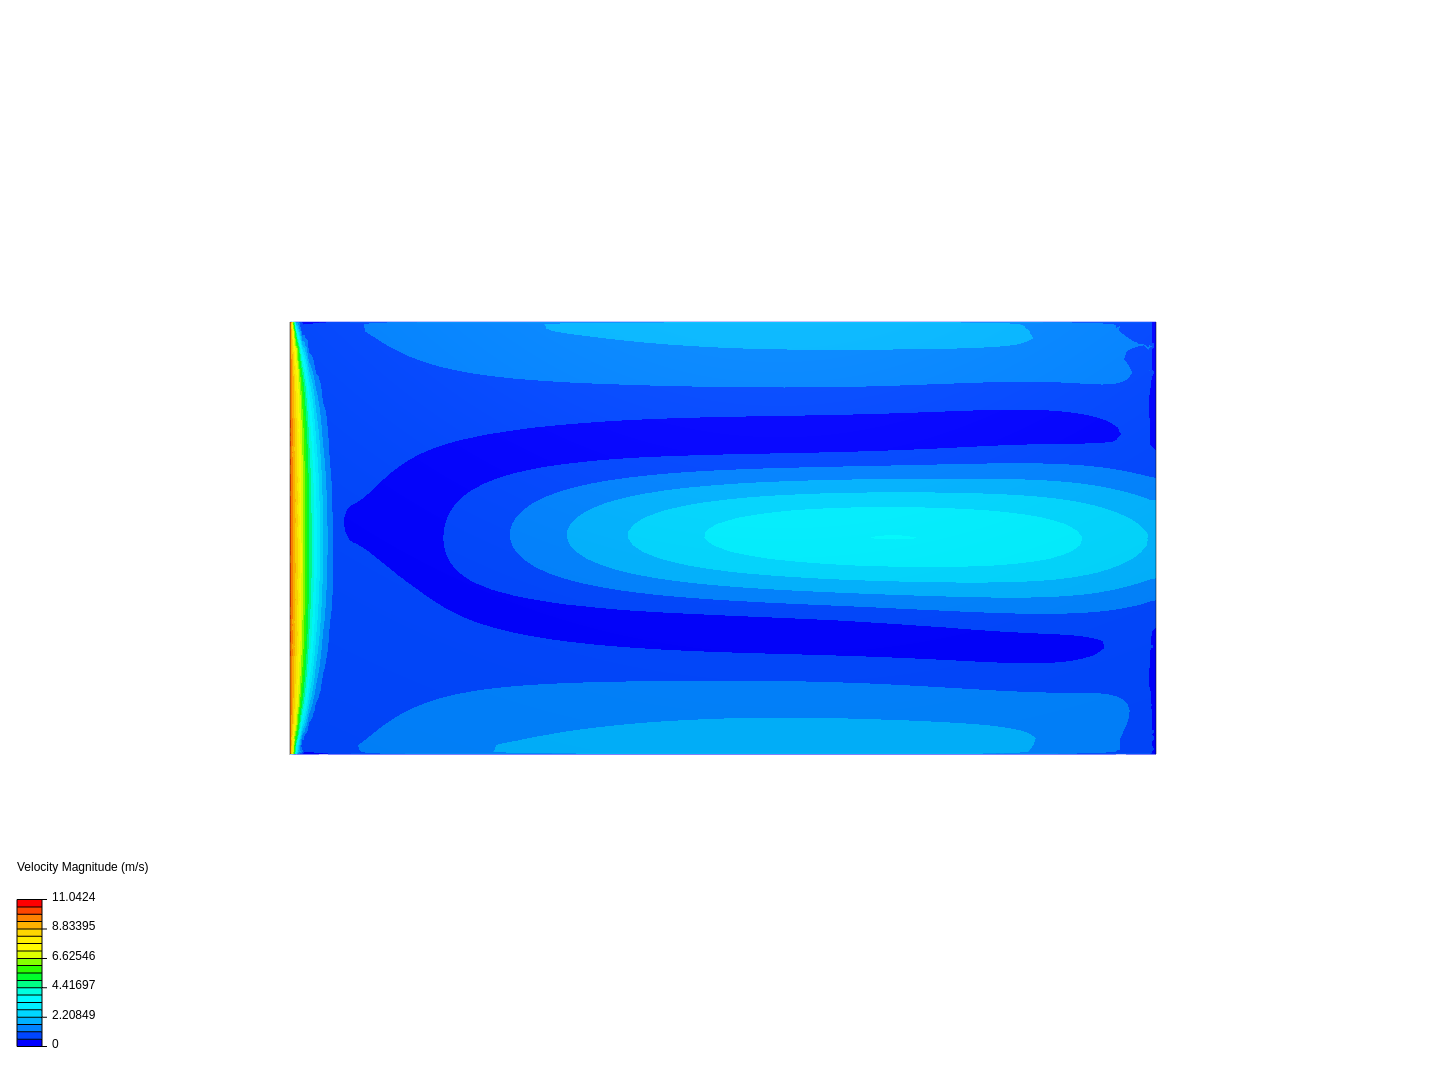 ex 8 (laminar flow) image